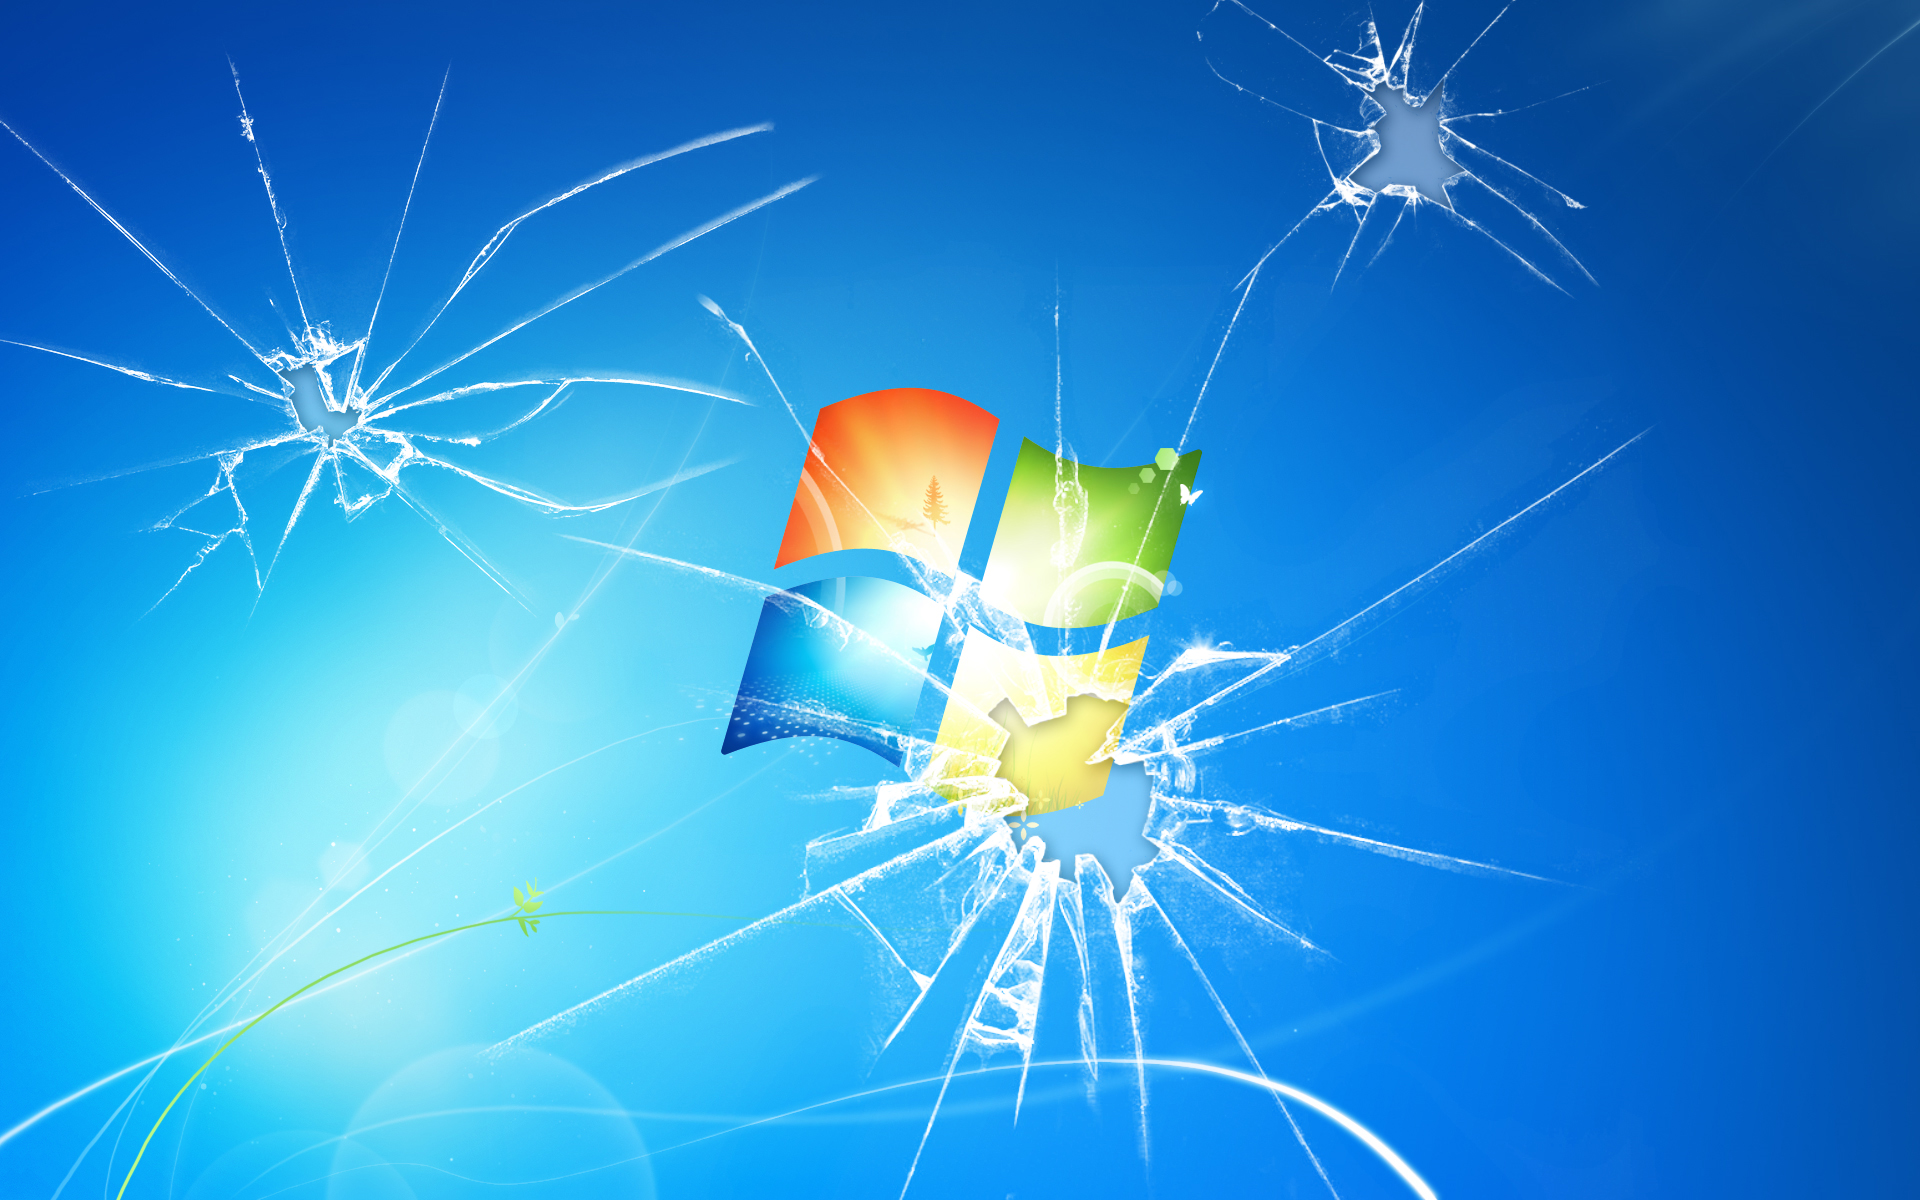 49+] Broken Screen Wallpaper Windows 10 - WallpaperSafari